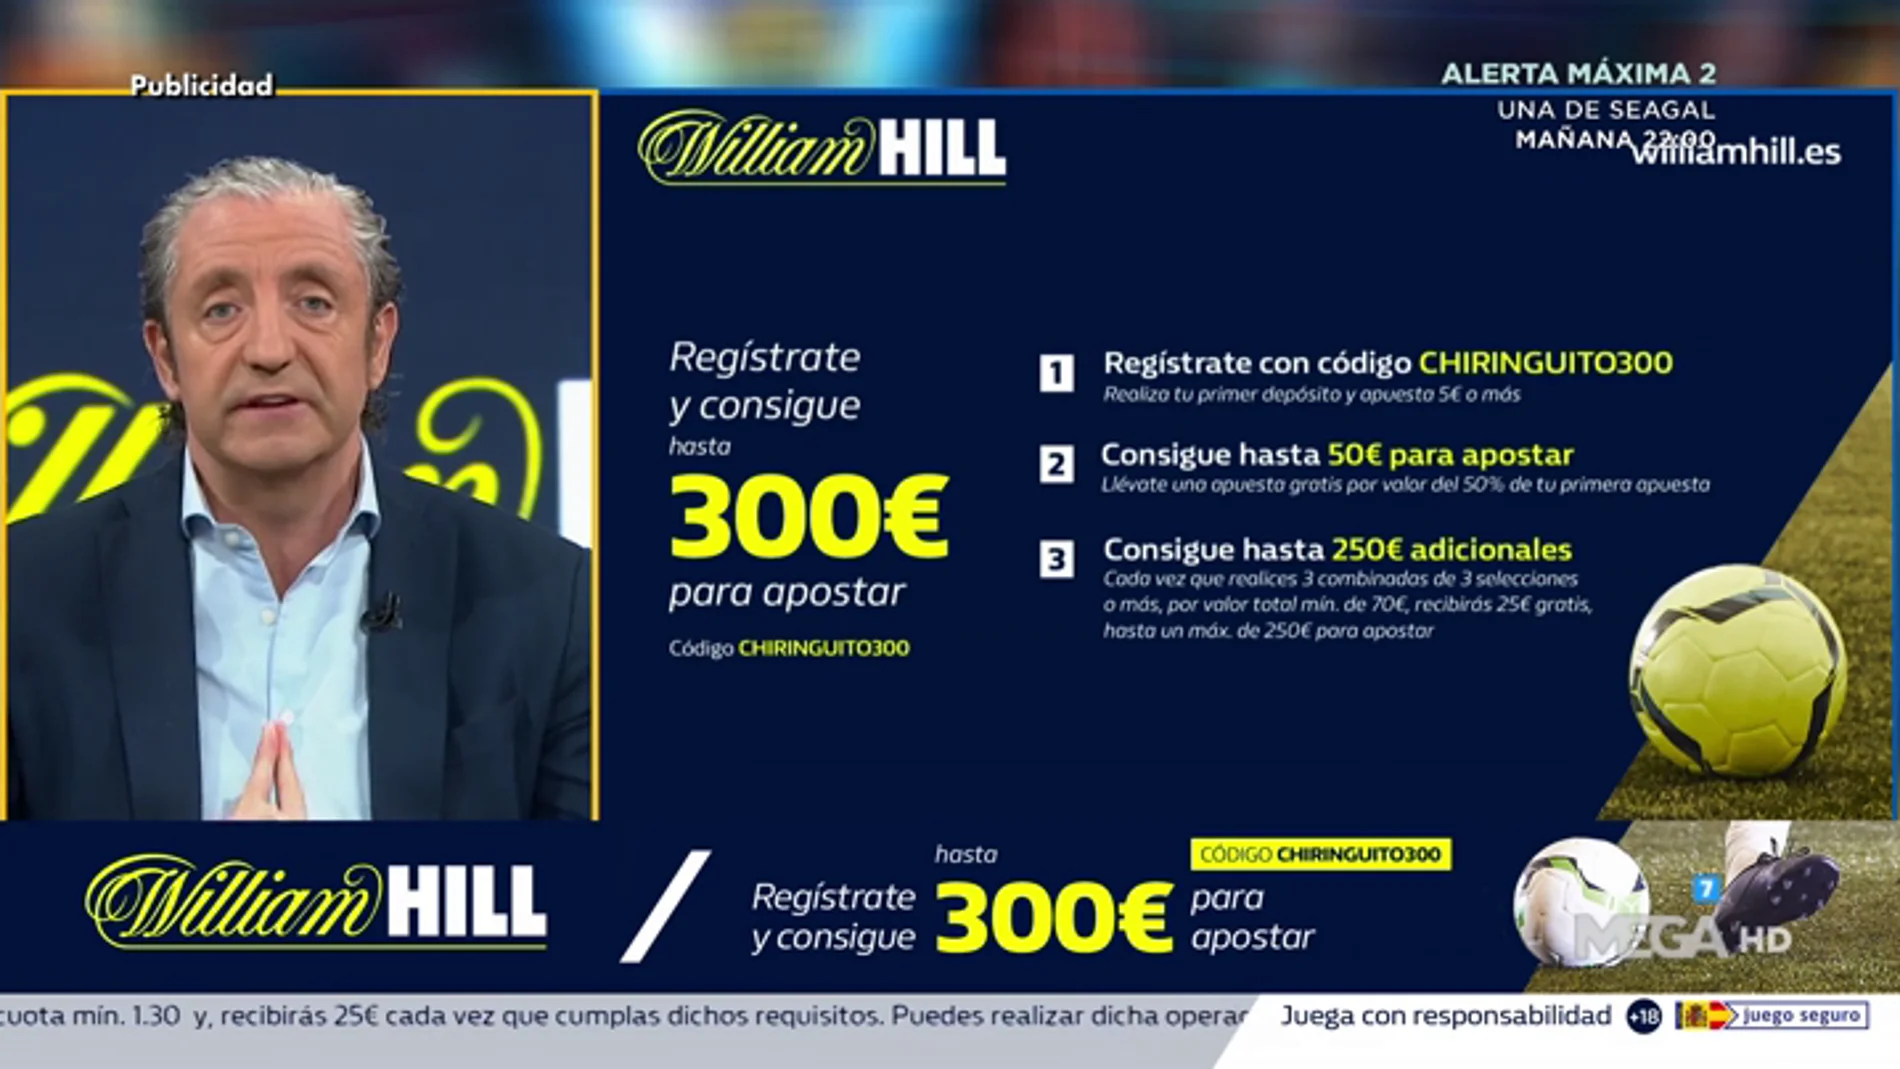  Josep te trae la mejor oferta de registro para que apuestes con William Hill